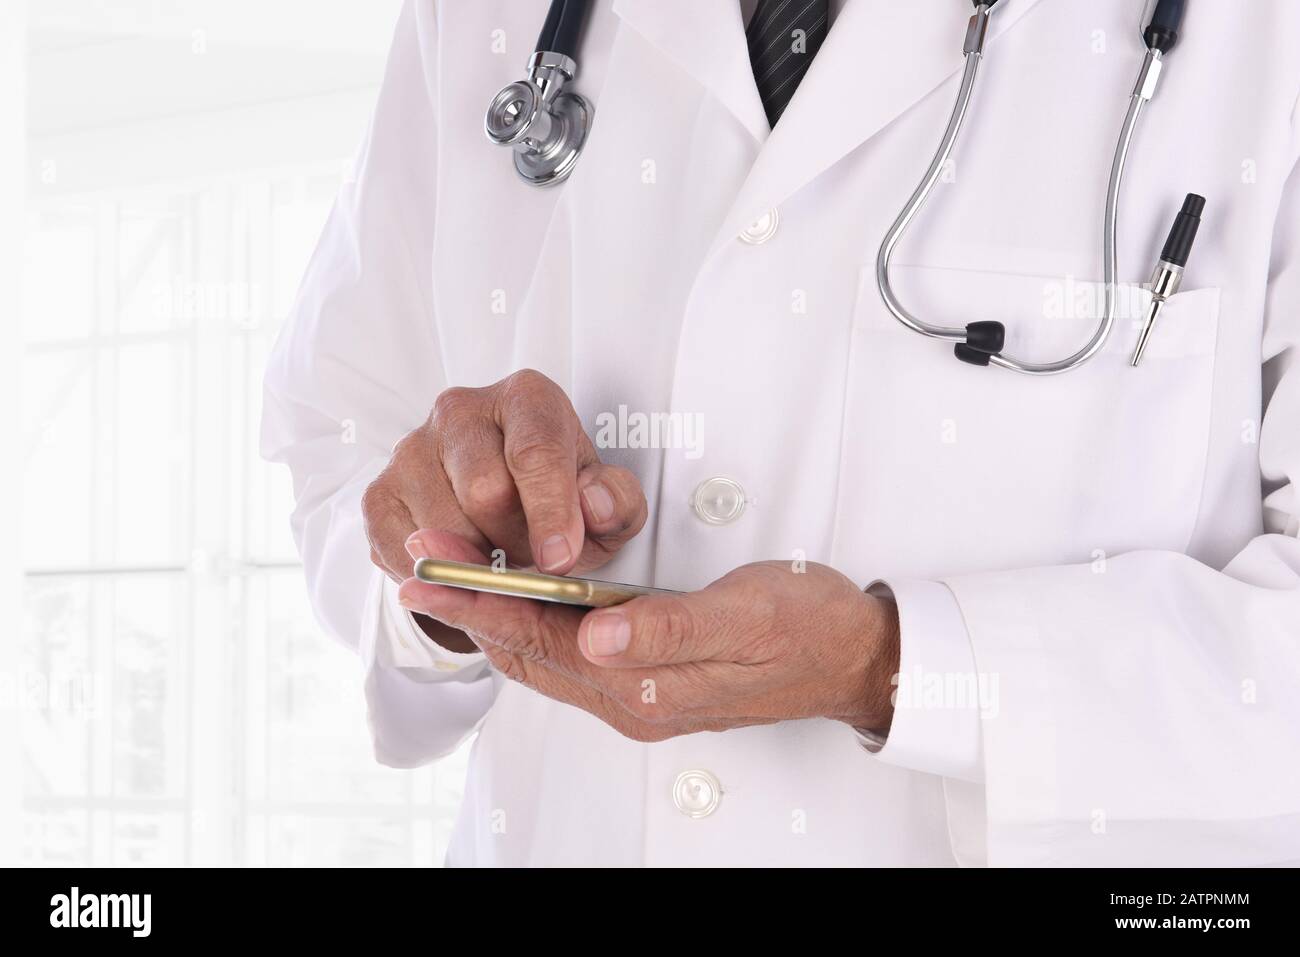 Gros plan d'un médecin textant sur son téléphone cellulaire dans un établissement médical moderne. L'homme n'est pas reconnaissable. Banque D'Images